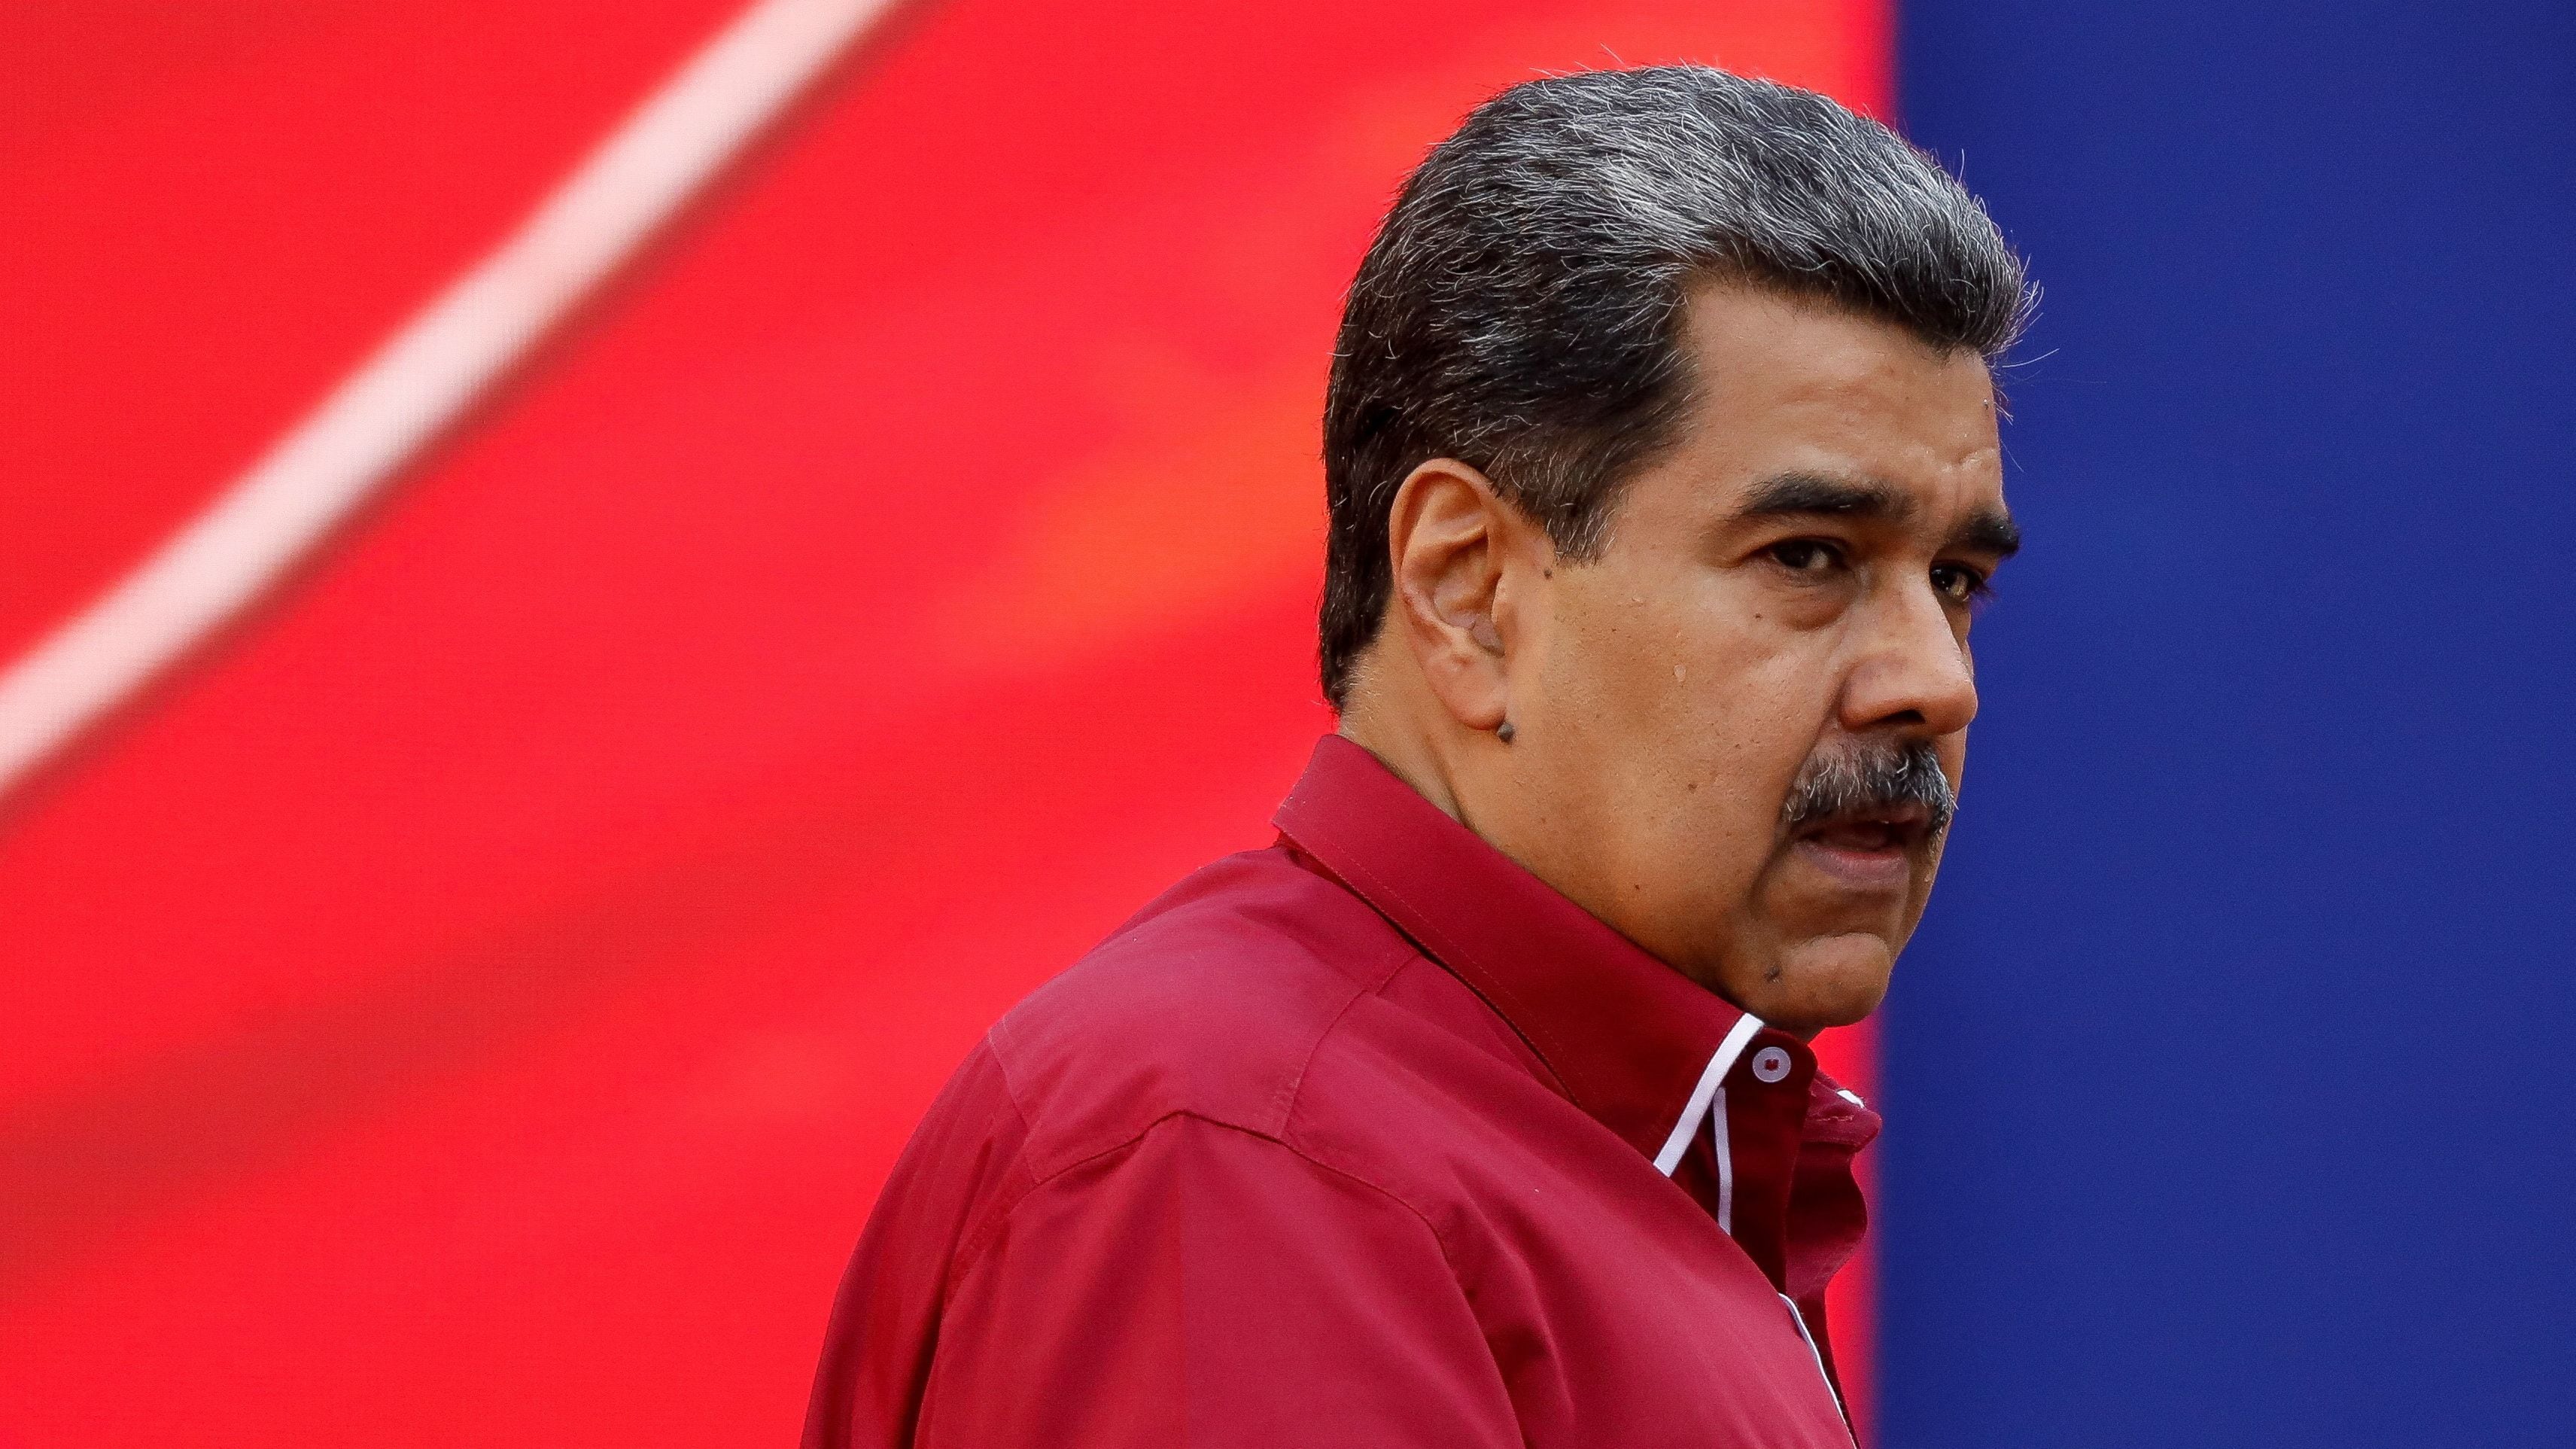 Allan Brewer-Carías sobre la kakistocracia: "Es el caso de Venezuela, donde el régimen que se instaló en el mismo hace ya más de veinte años insiste en seguir un modelo autocrático ultra caduco como es el cubano, ahora repetido en Nicaragua, falseando todo".